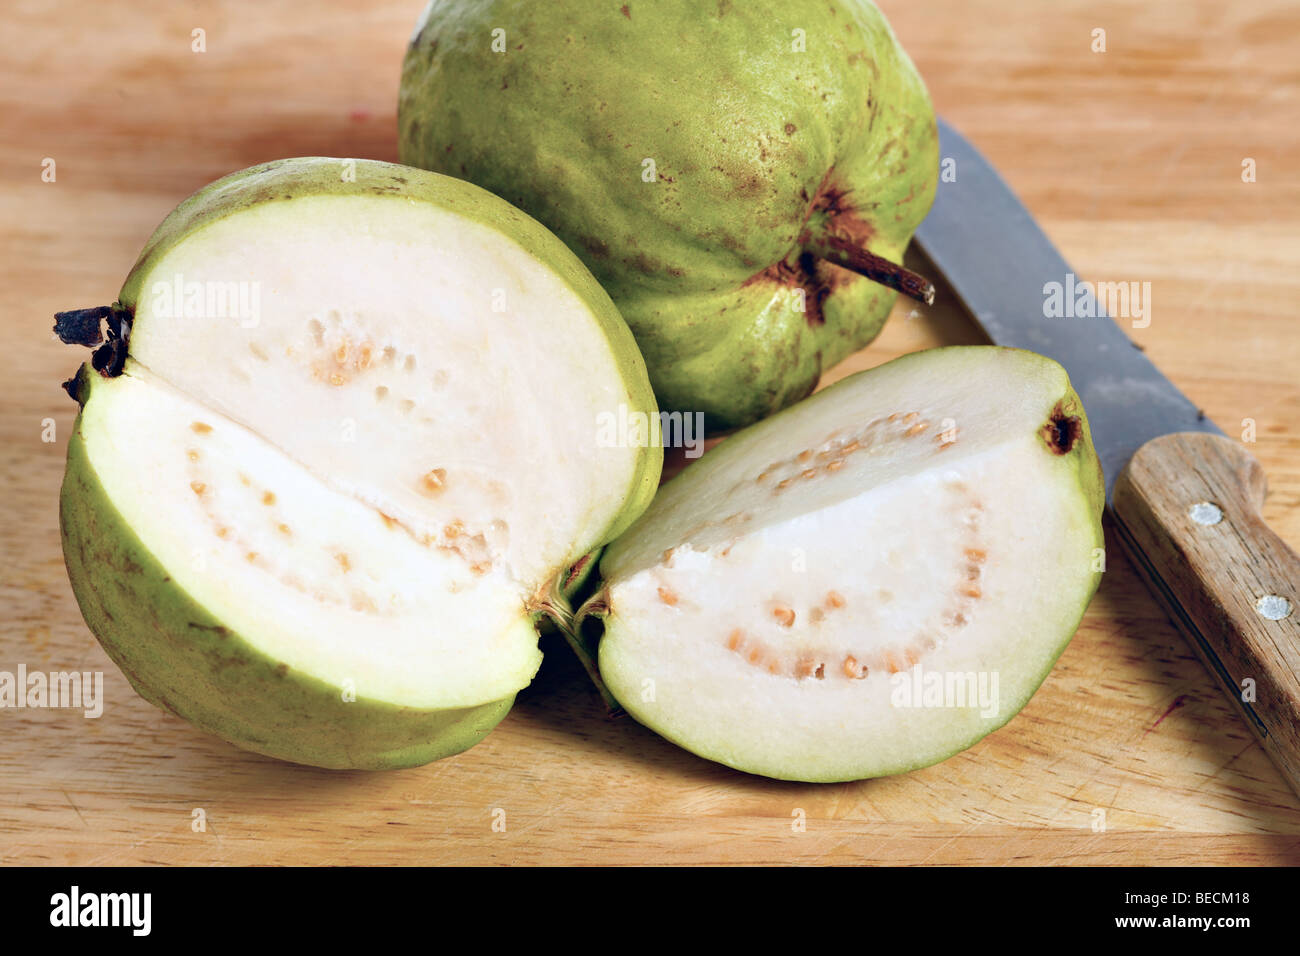 Eine Guave-Frucht, die gemeinsame Guave (Guave Guajava) Apfelsorte, aufschneiden, Fruchtfleisch und Kerne im Inneren zu zeigen Stockfoto